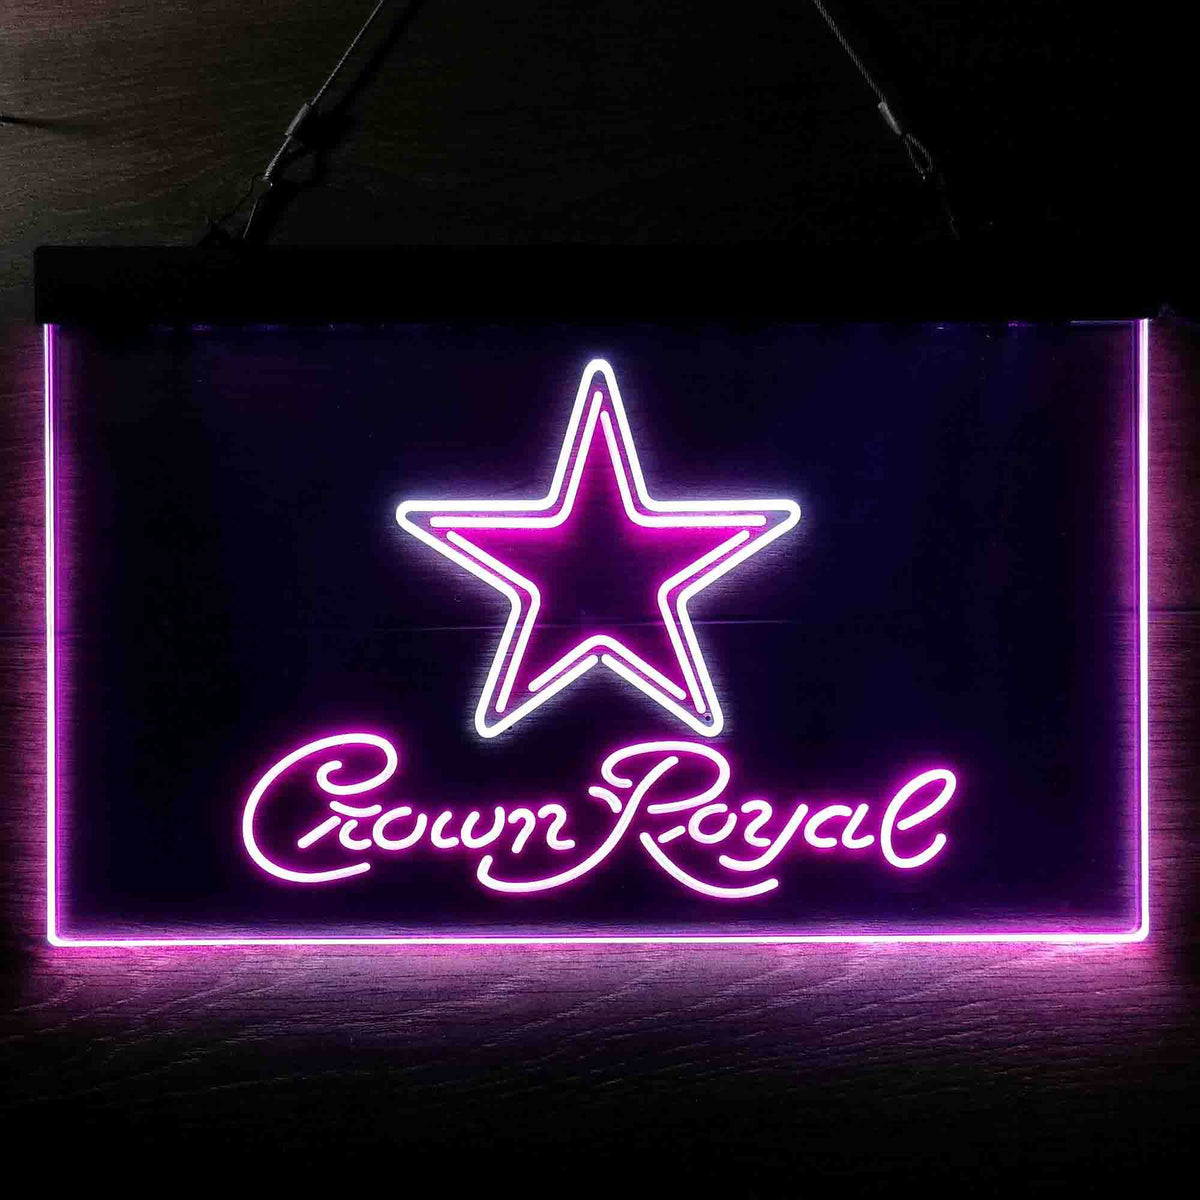 Dallas Cowboys Crown Royal NeonLike LED Sign Home Bar Gift